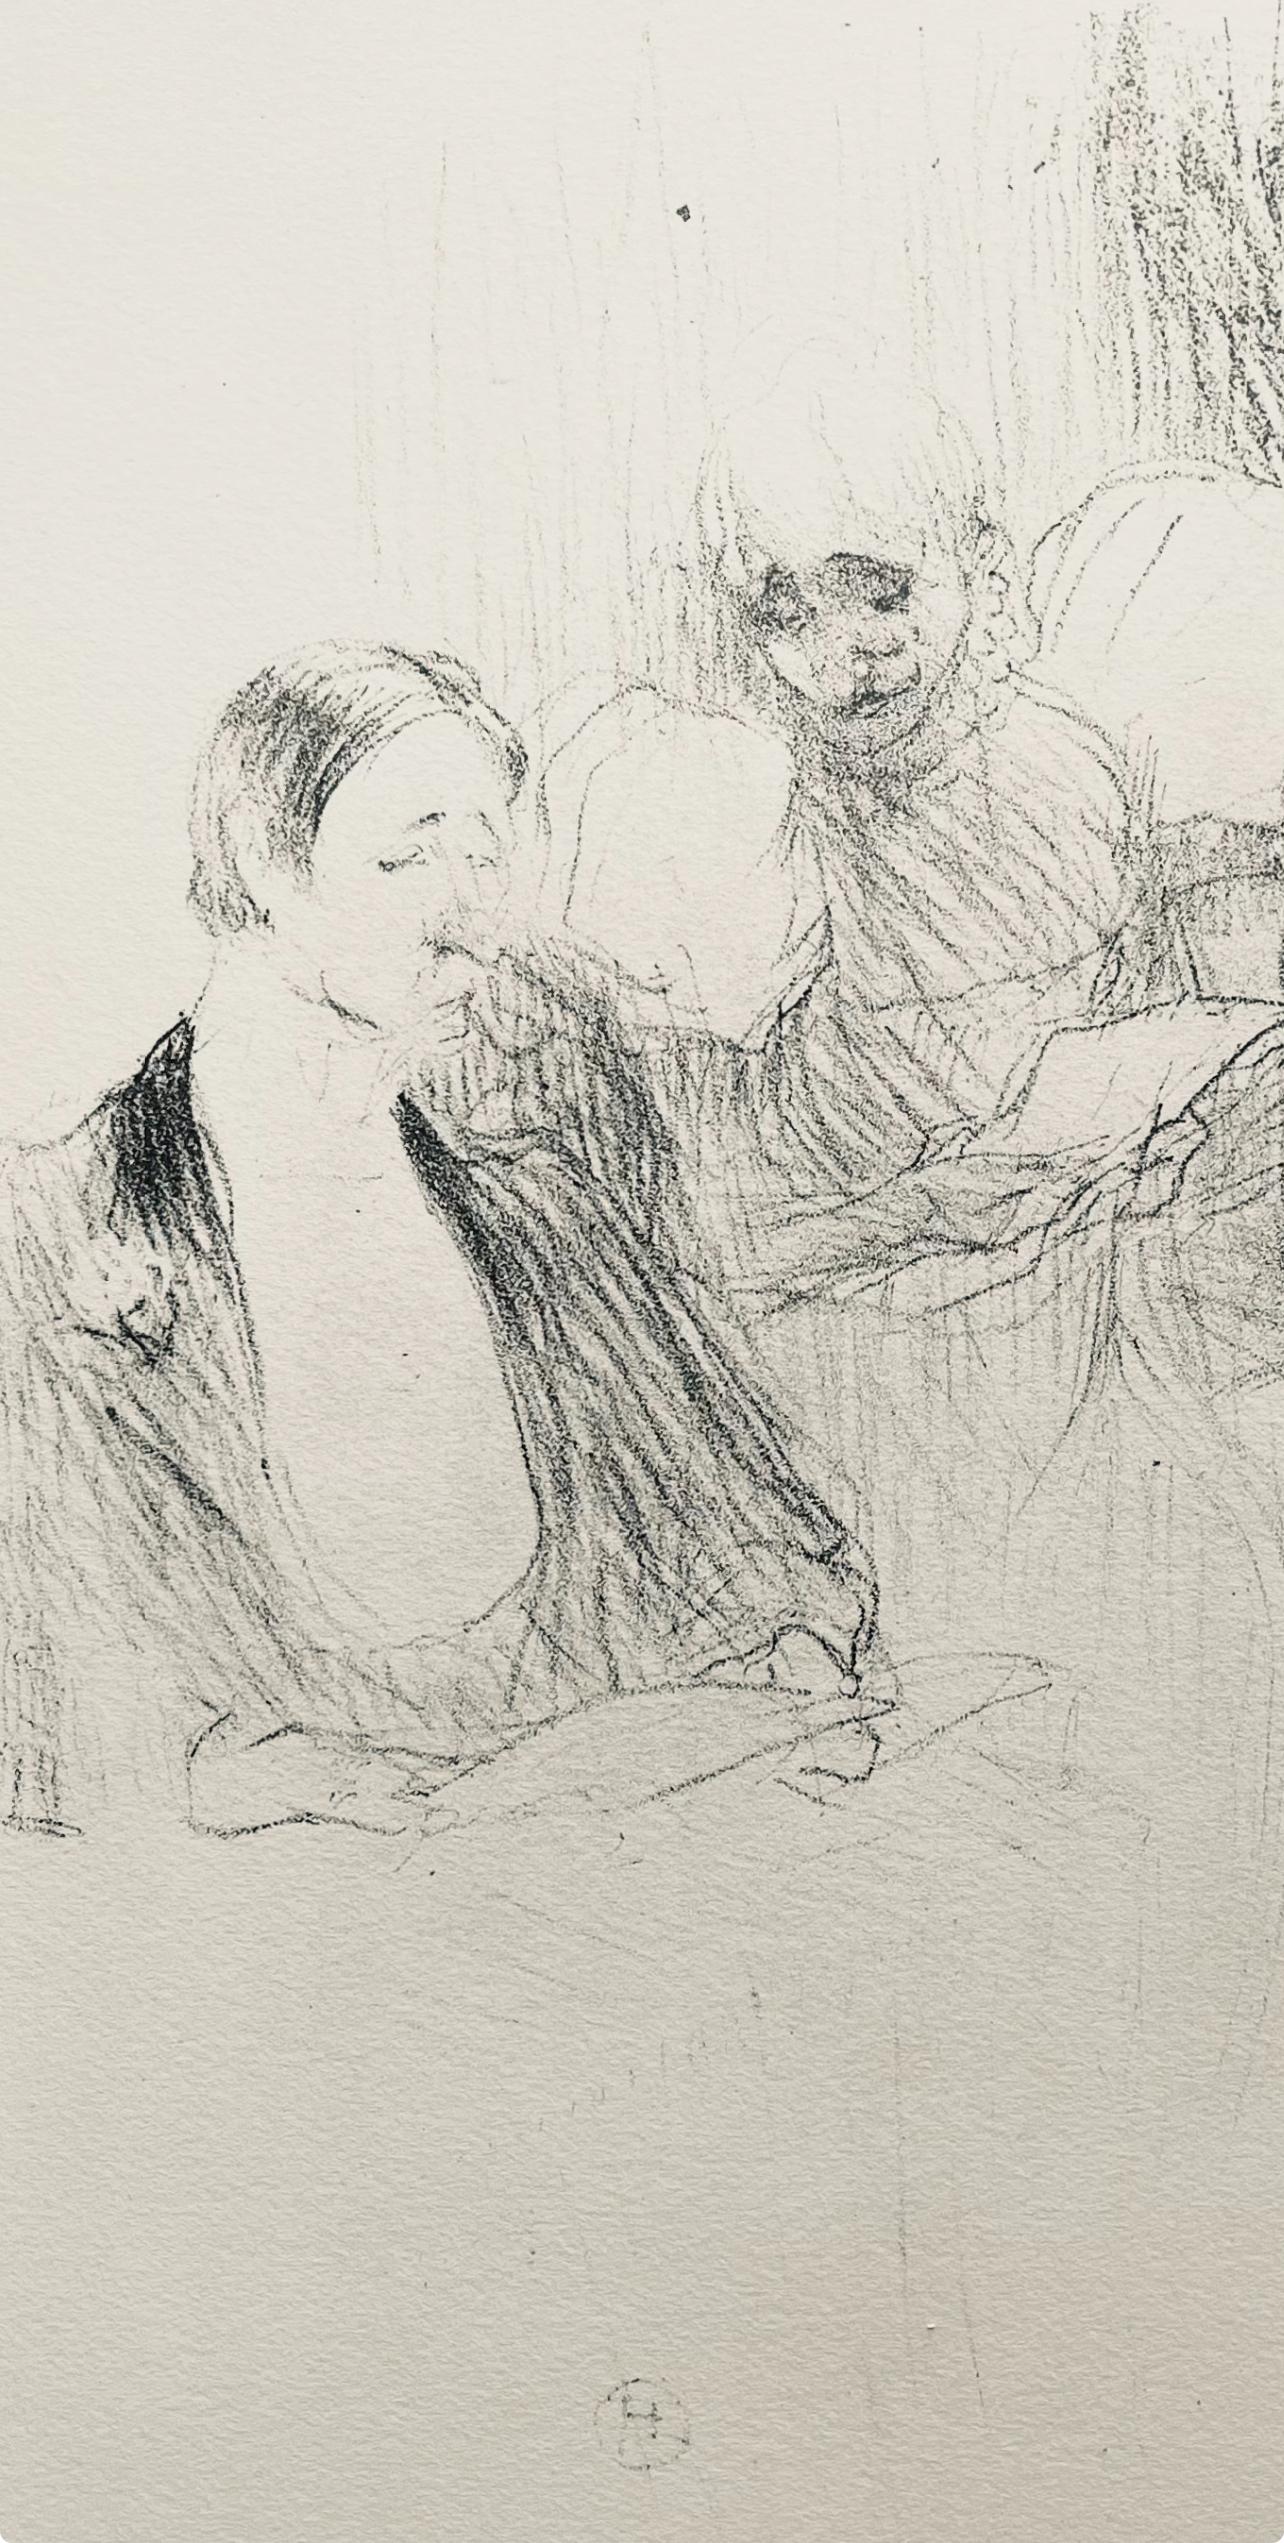 Toulouse-Lautrec, Composition, Yvette Guilbert vue par Toulouse-Lautrec (after) - Print by Henri de Toulouse-Lautrec